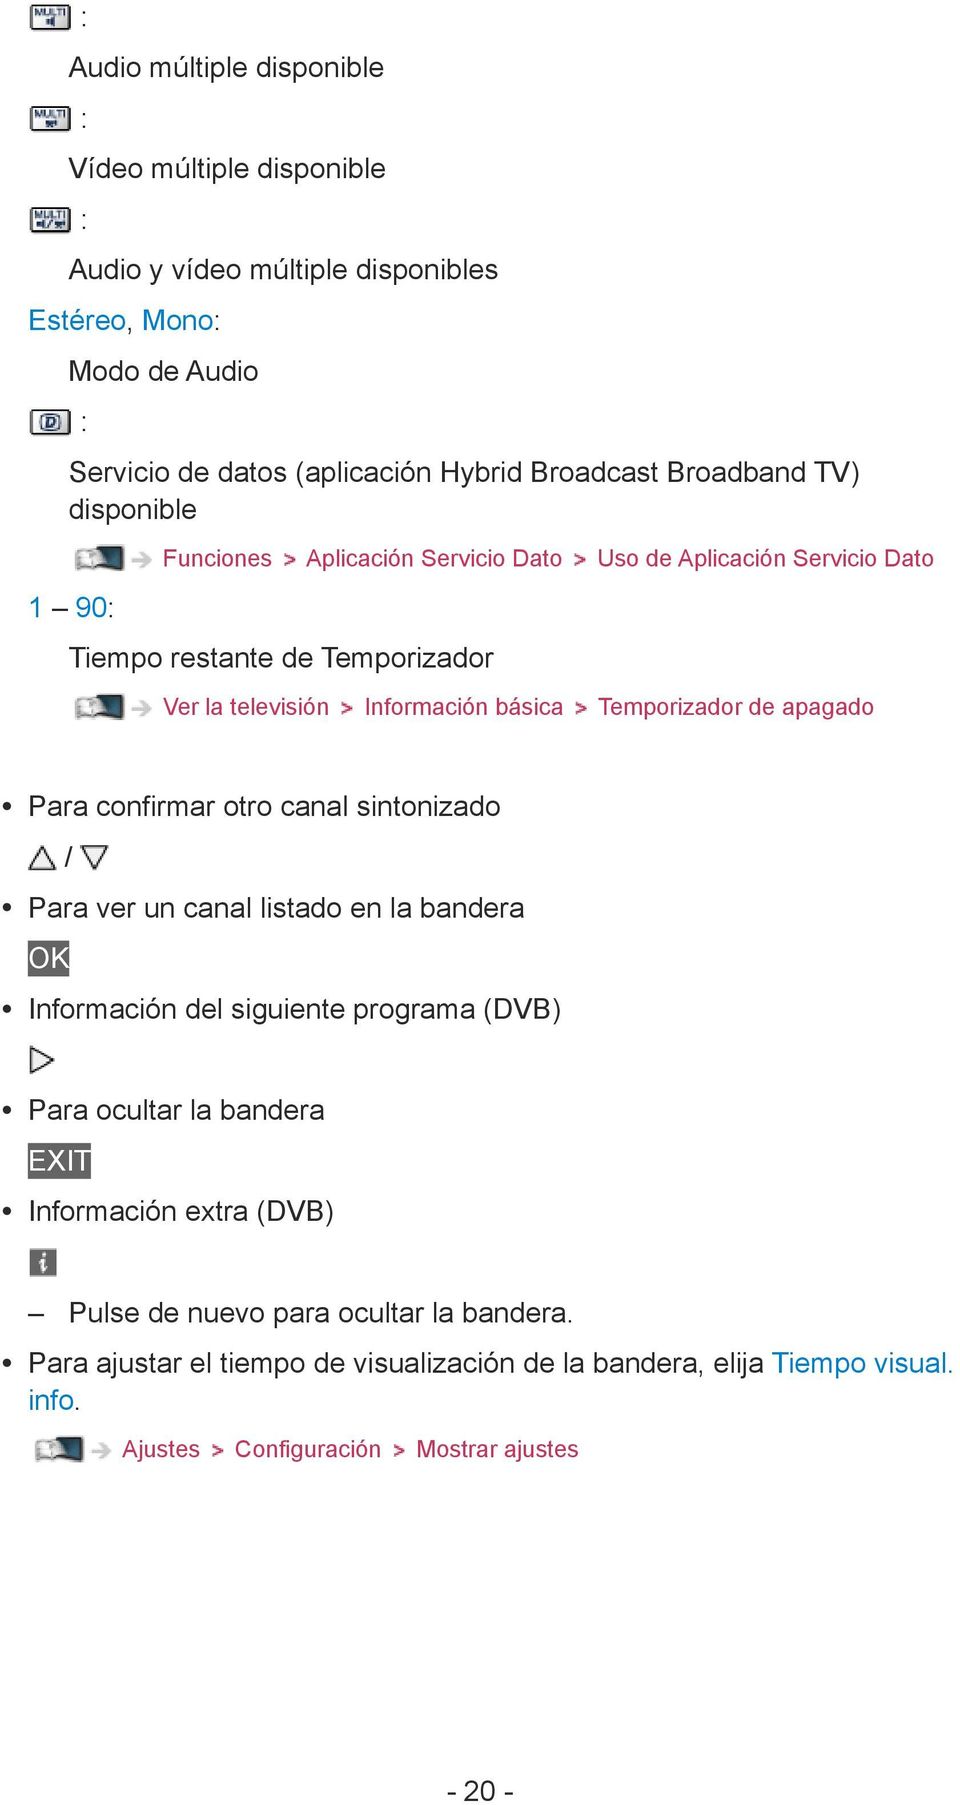 Temporizador de apagado Para confirmar otro canal sintonizado / Para ver un canal listado en la bandera OK Información del siguiente programa (DVB) Para ocultar la bandera EXIT